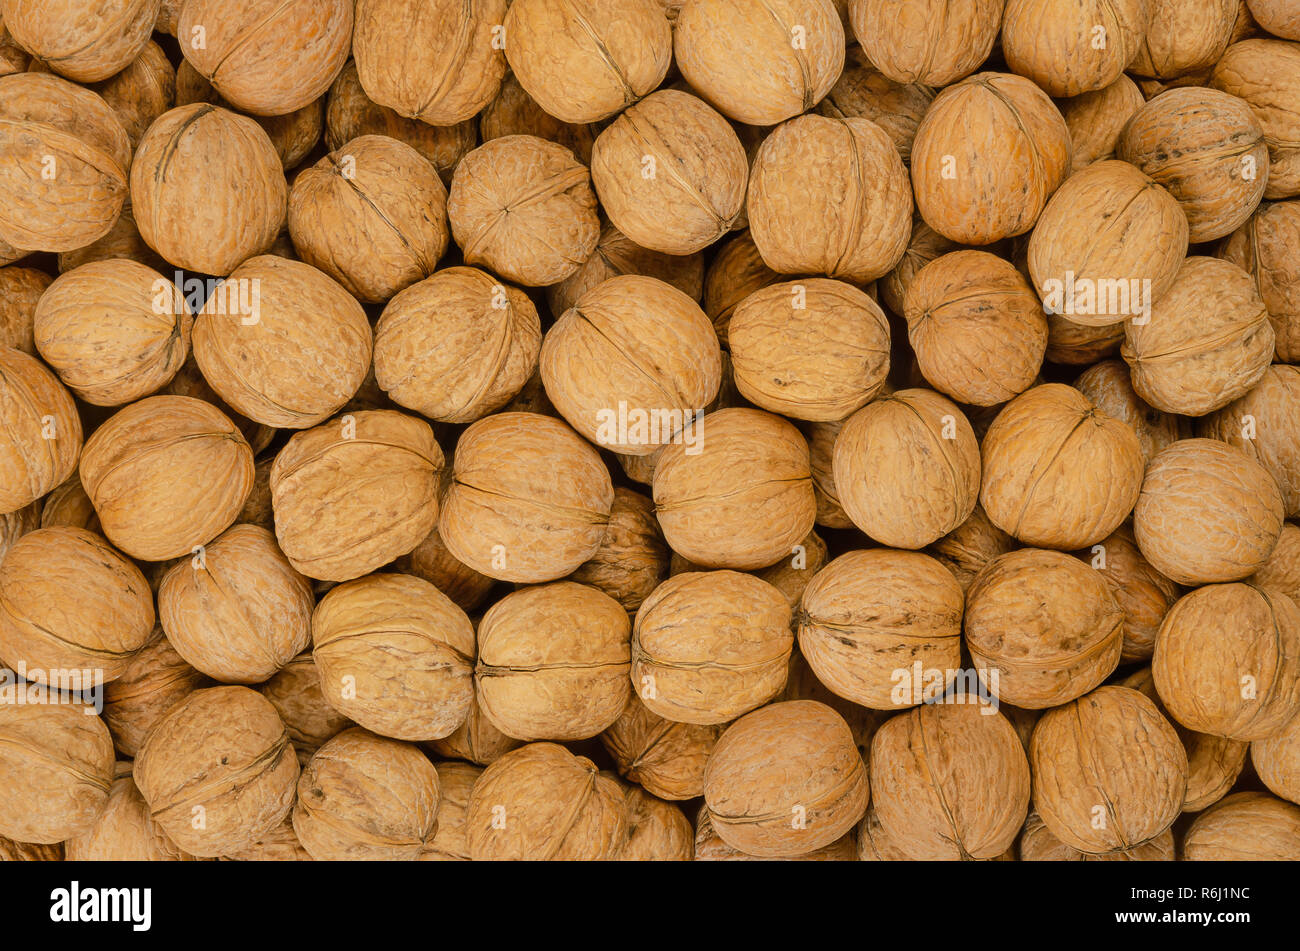 Les noix de l'arrière-plan. Les graines non décortiquées du Noyer commun Juglans regia. Pile de fruits entiers avec des coquillages, utilisés comme collation et pour la cuisson. Banque D'Images